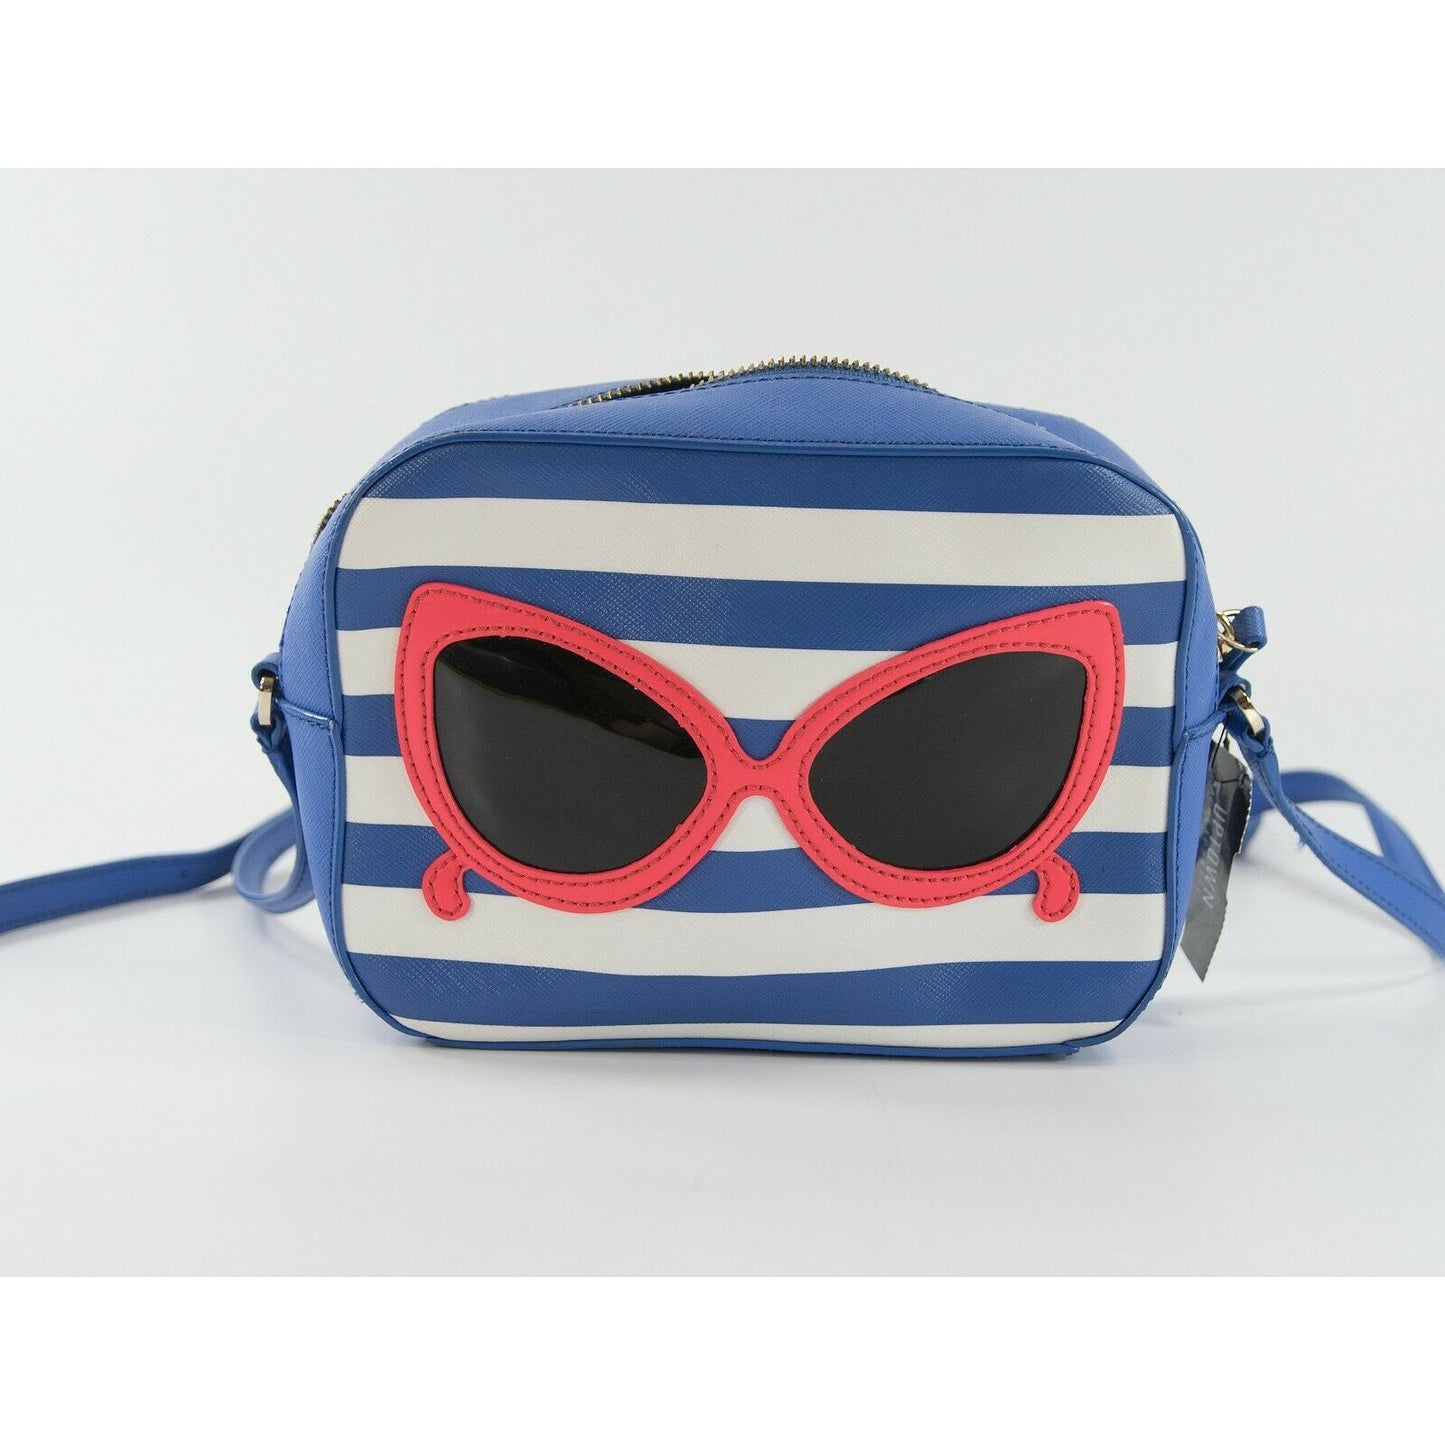 Kate Spade Blue Saffiano Make a Splash Sunglasses Mindy Crossbody Bag EUC